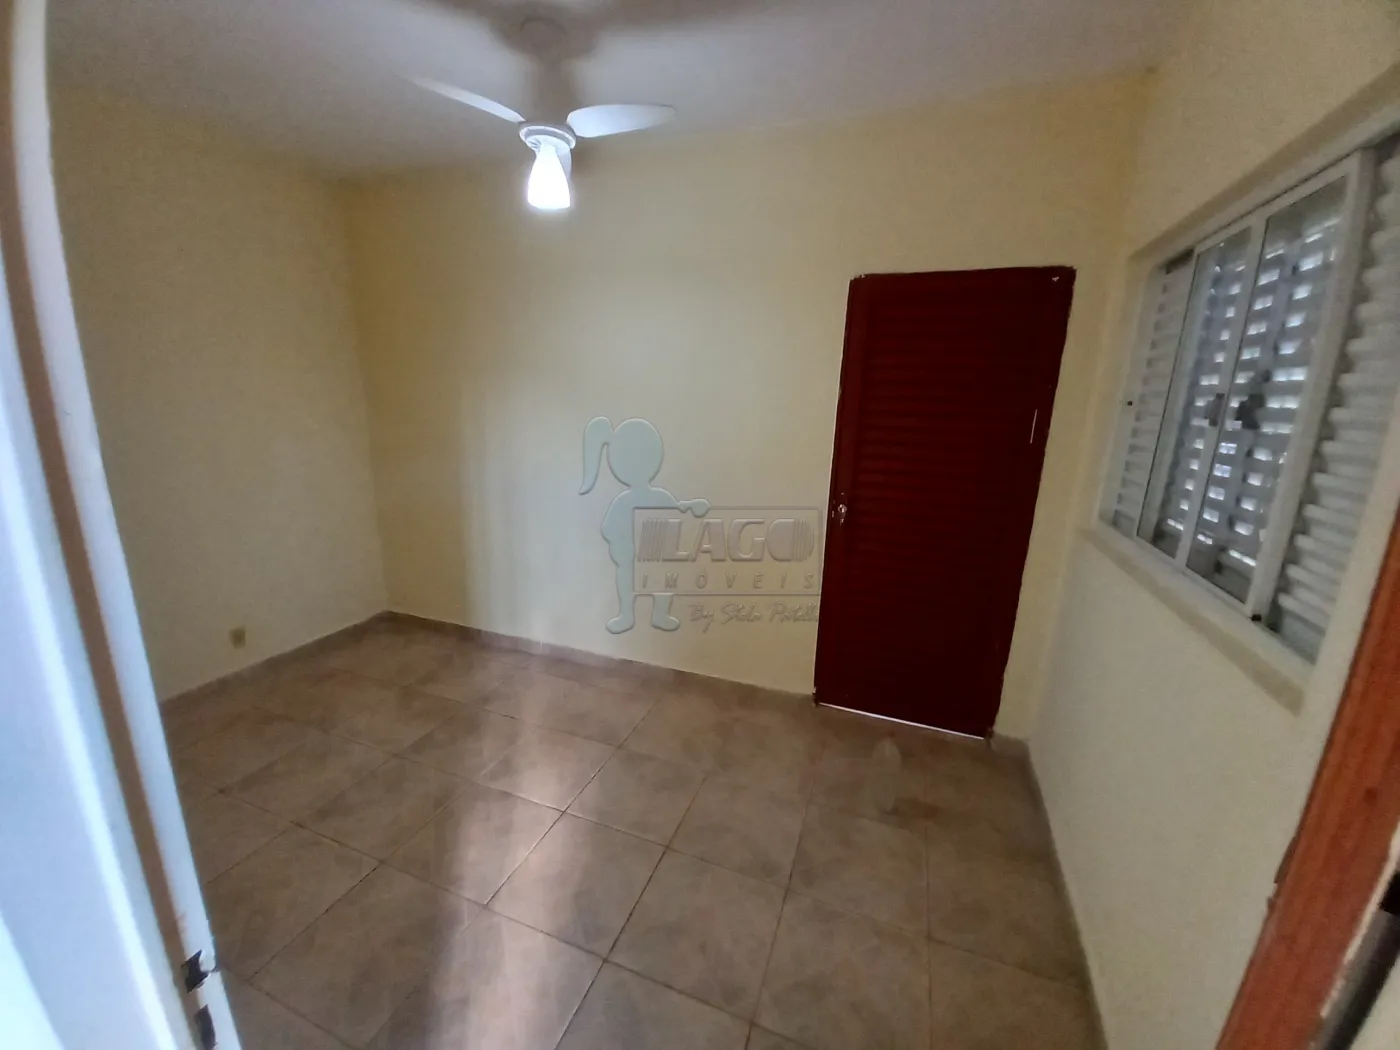 Alugar Casa / Padrão em Ribeirão Preto R$ 1.000,00 - Foto 11